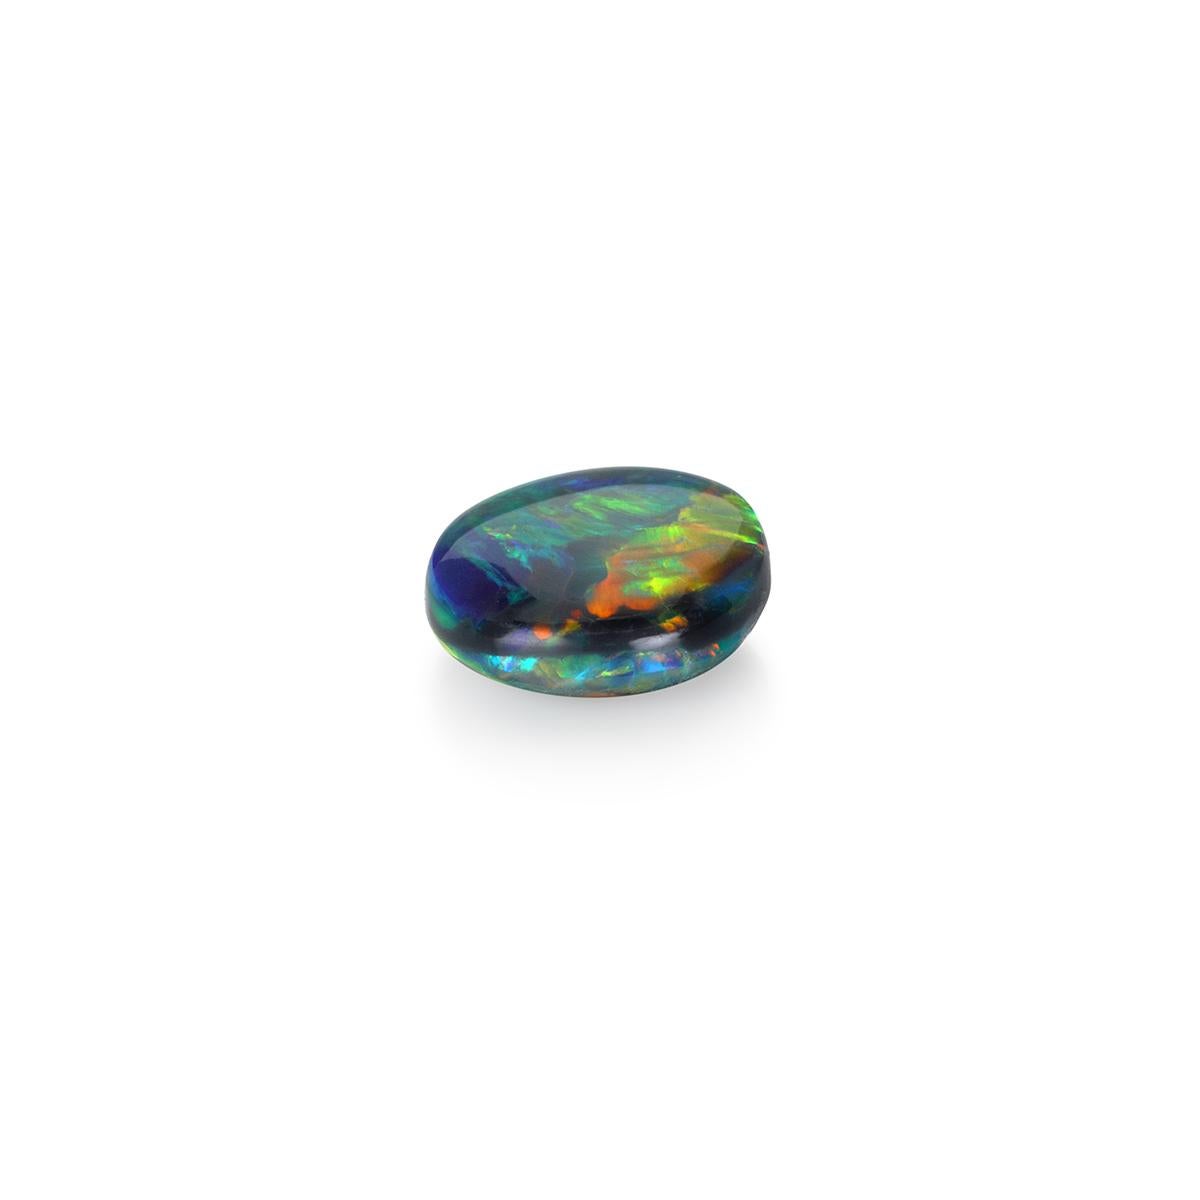 Spectaculaire par sa couleur et sa forme et présentant une étonnante gamme de couleurs, cette opale noire naturelle de 2,80 carats est une pierre de qualité gemme pour le collectionneur passionné ou l'amateur de bijoux. 

Contrairement aux opales